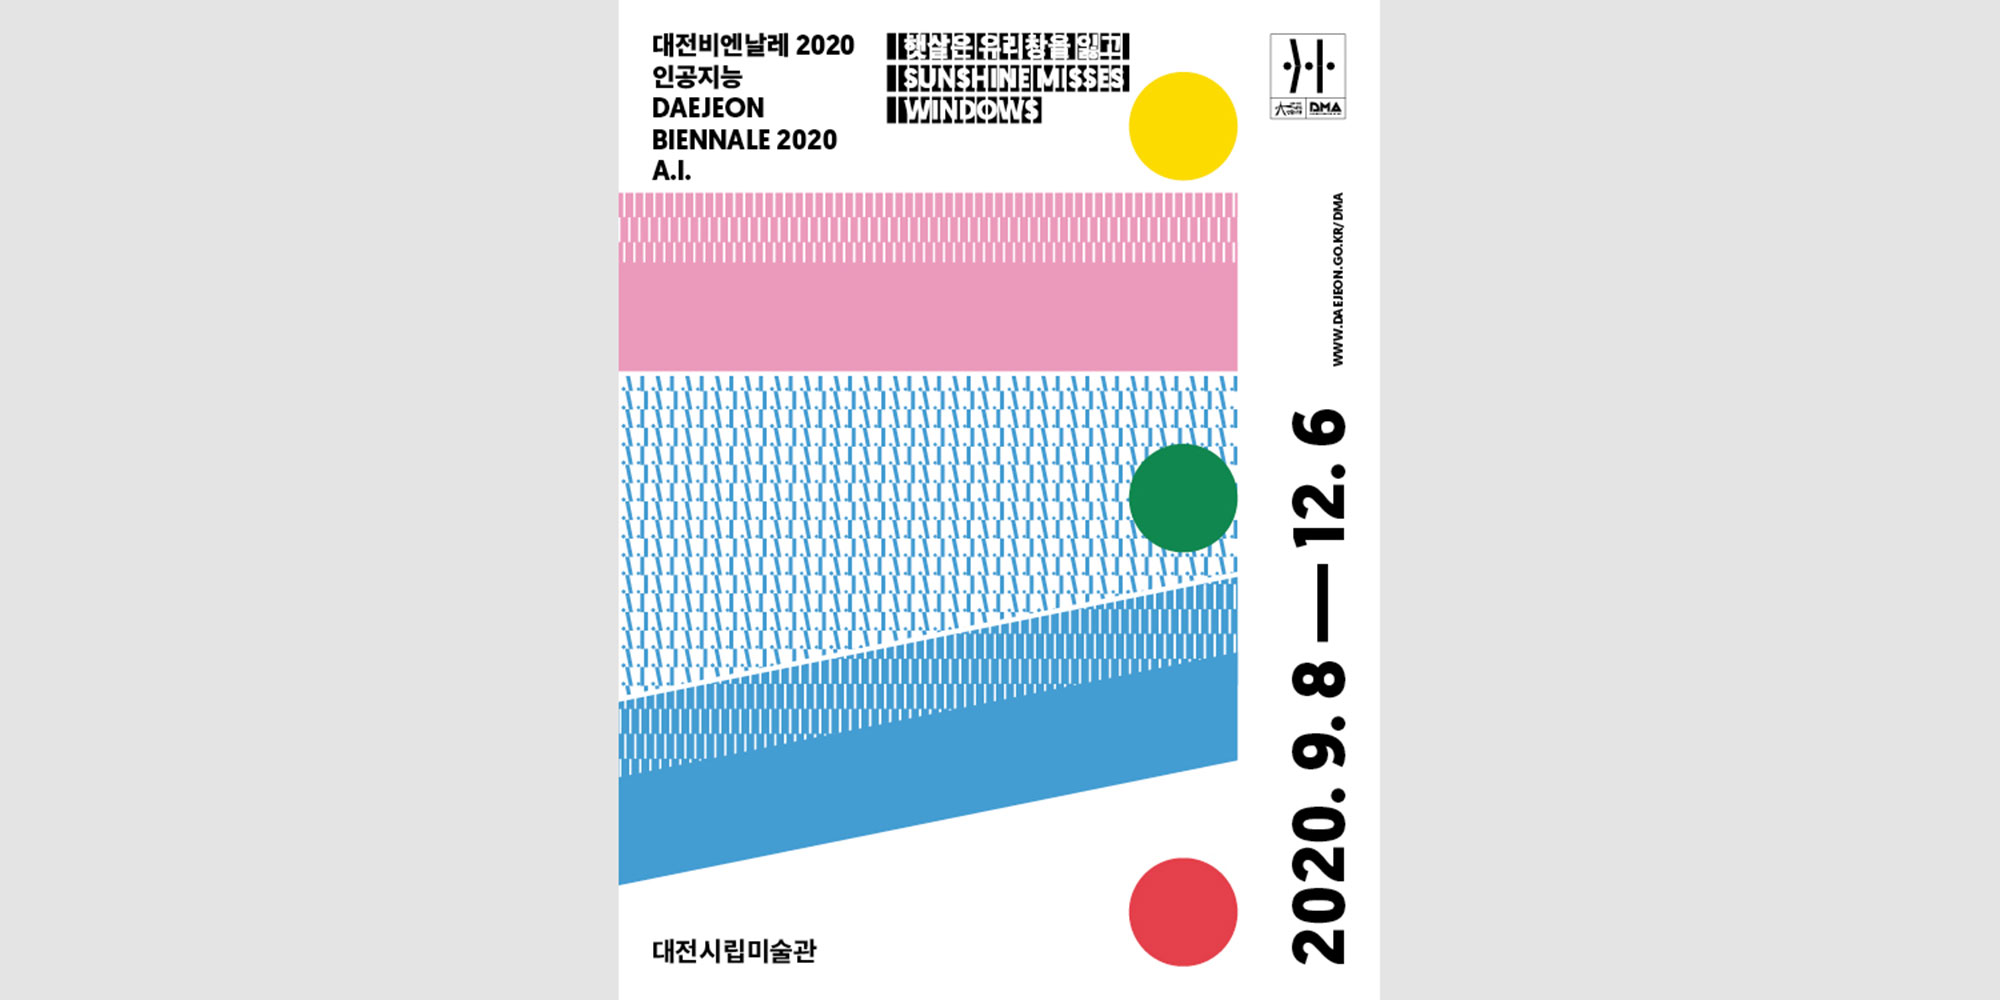 Daejeon Biennale 2020 AI poster